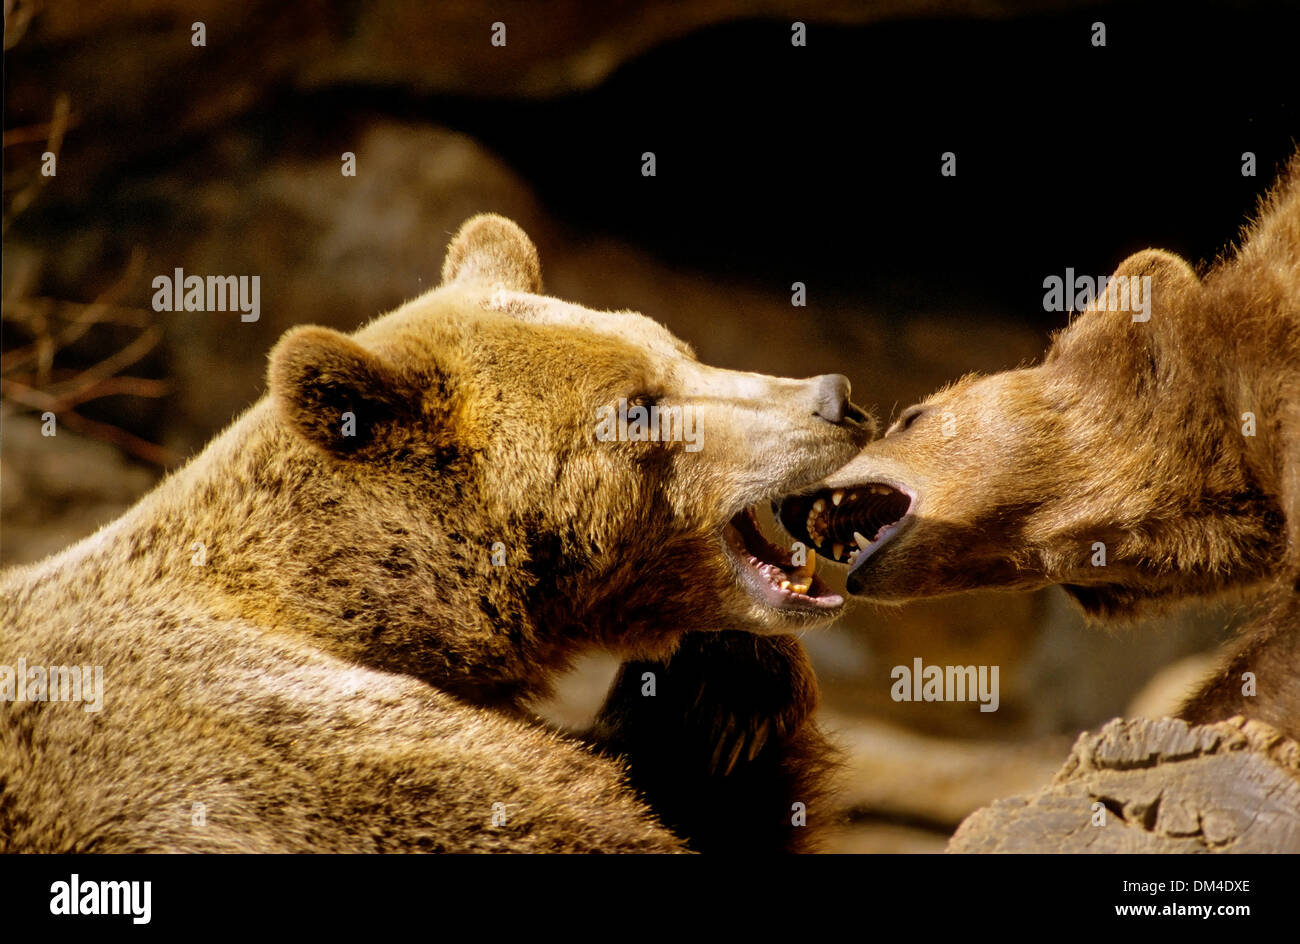 brown bear (Ursus arctos), zwei Braunbären kämpfend, Stock Photo